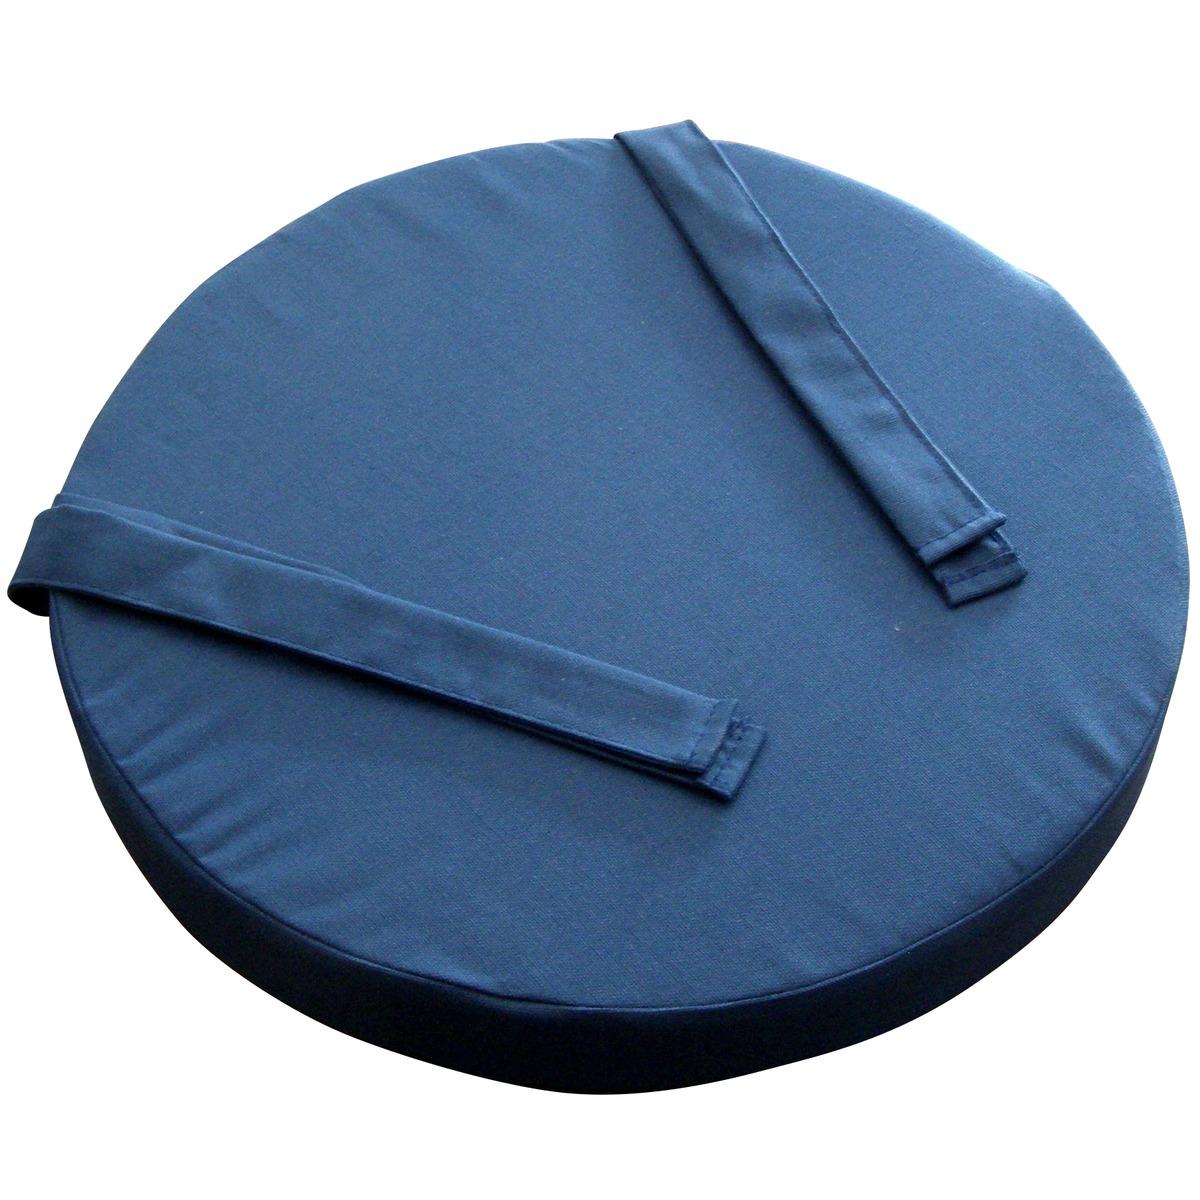 Galette de chaise collection Panama 100 % coton - Diam. 40 x 5 cm - Bleu marine